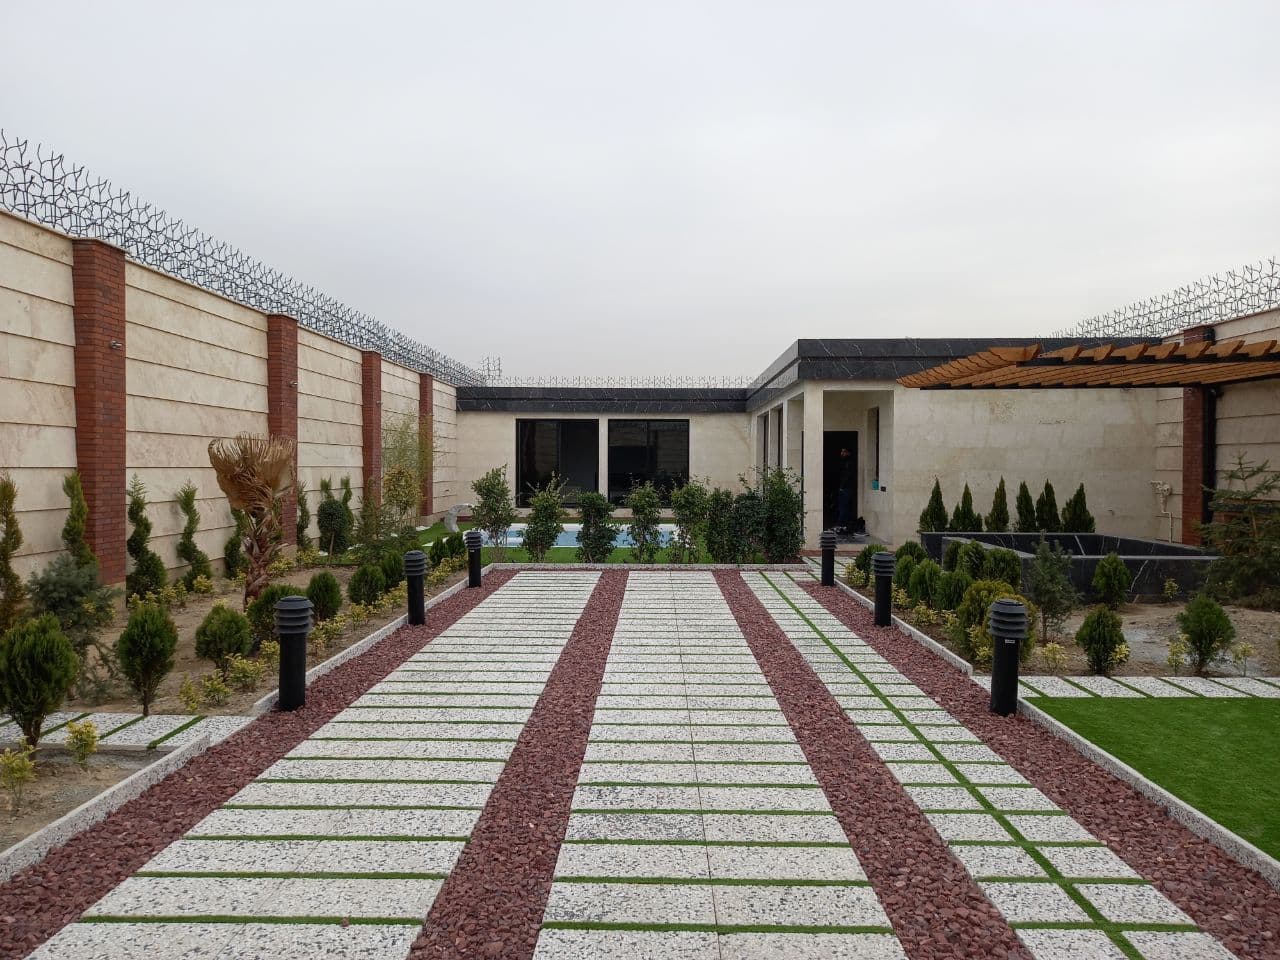 525 متر باغ ویلا با سند تکبرک در شهریار